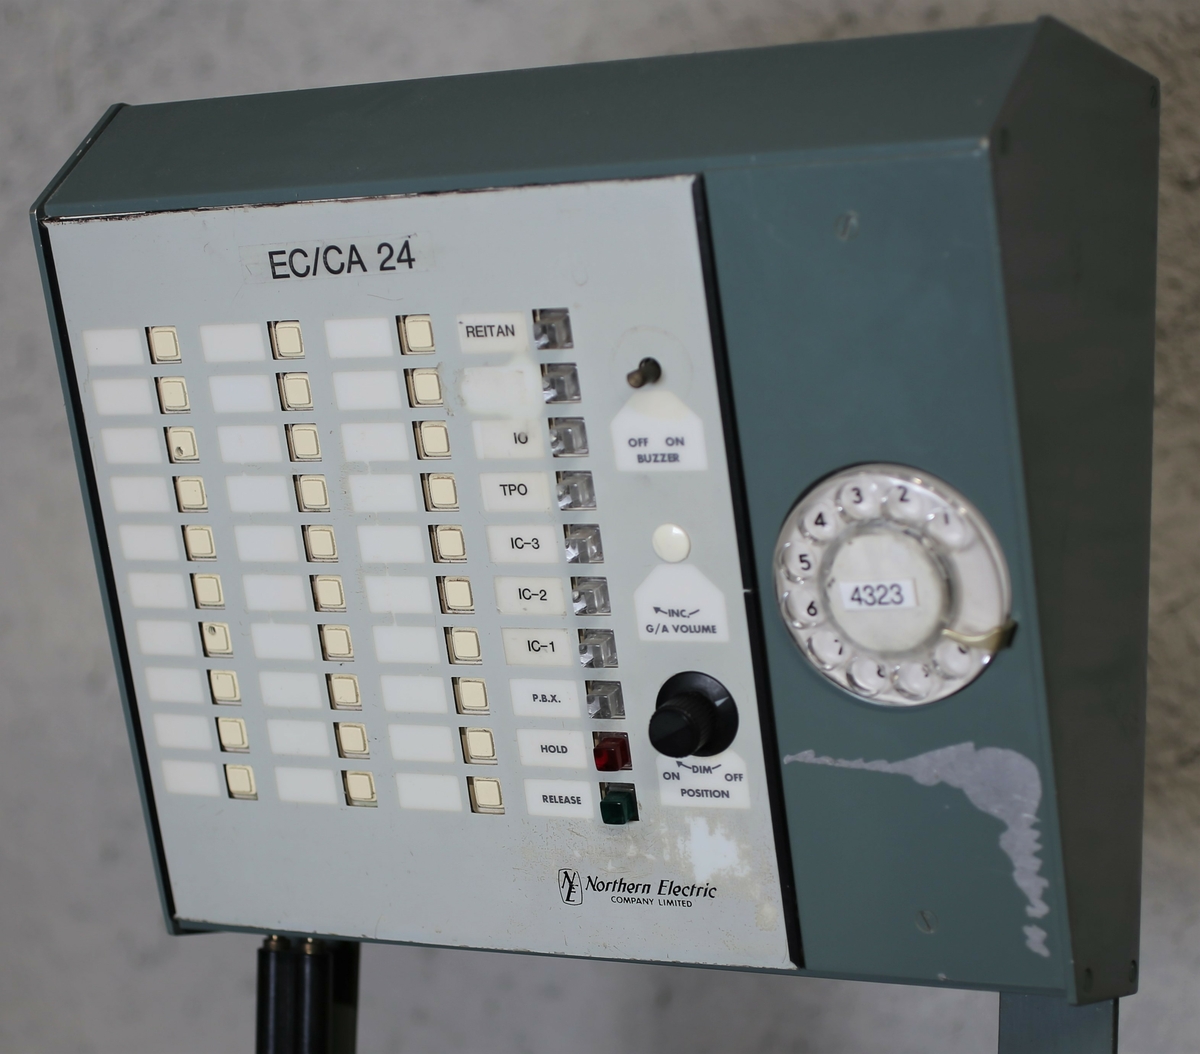 Sambandsboks for intern og ekstern kommunikasjon. Systemet hadde faste linjer mellom de enkelte brukere. Det var mulighet for både handset og headset.
Tilsvarende boks ble også brukt til radiosamband fra radarstasjon til fly.